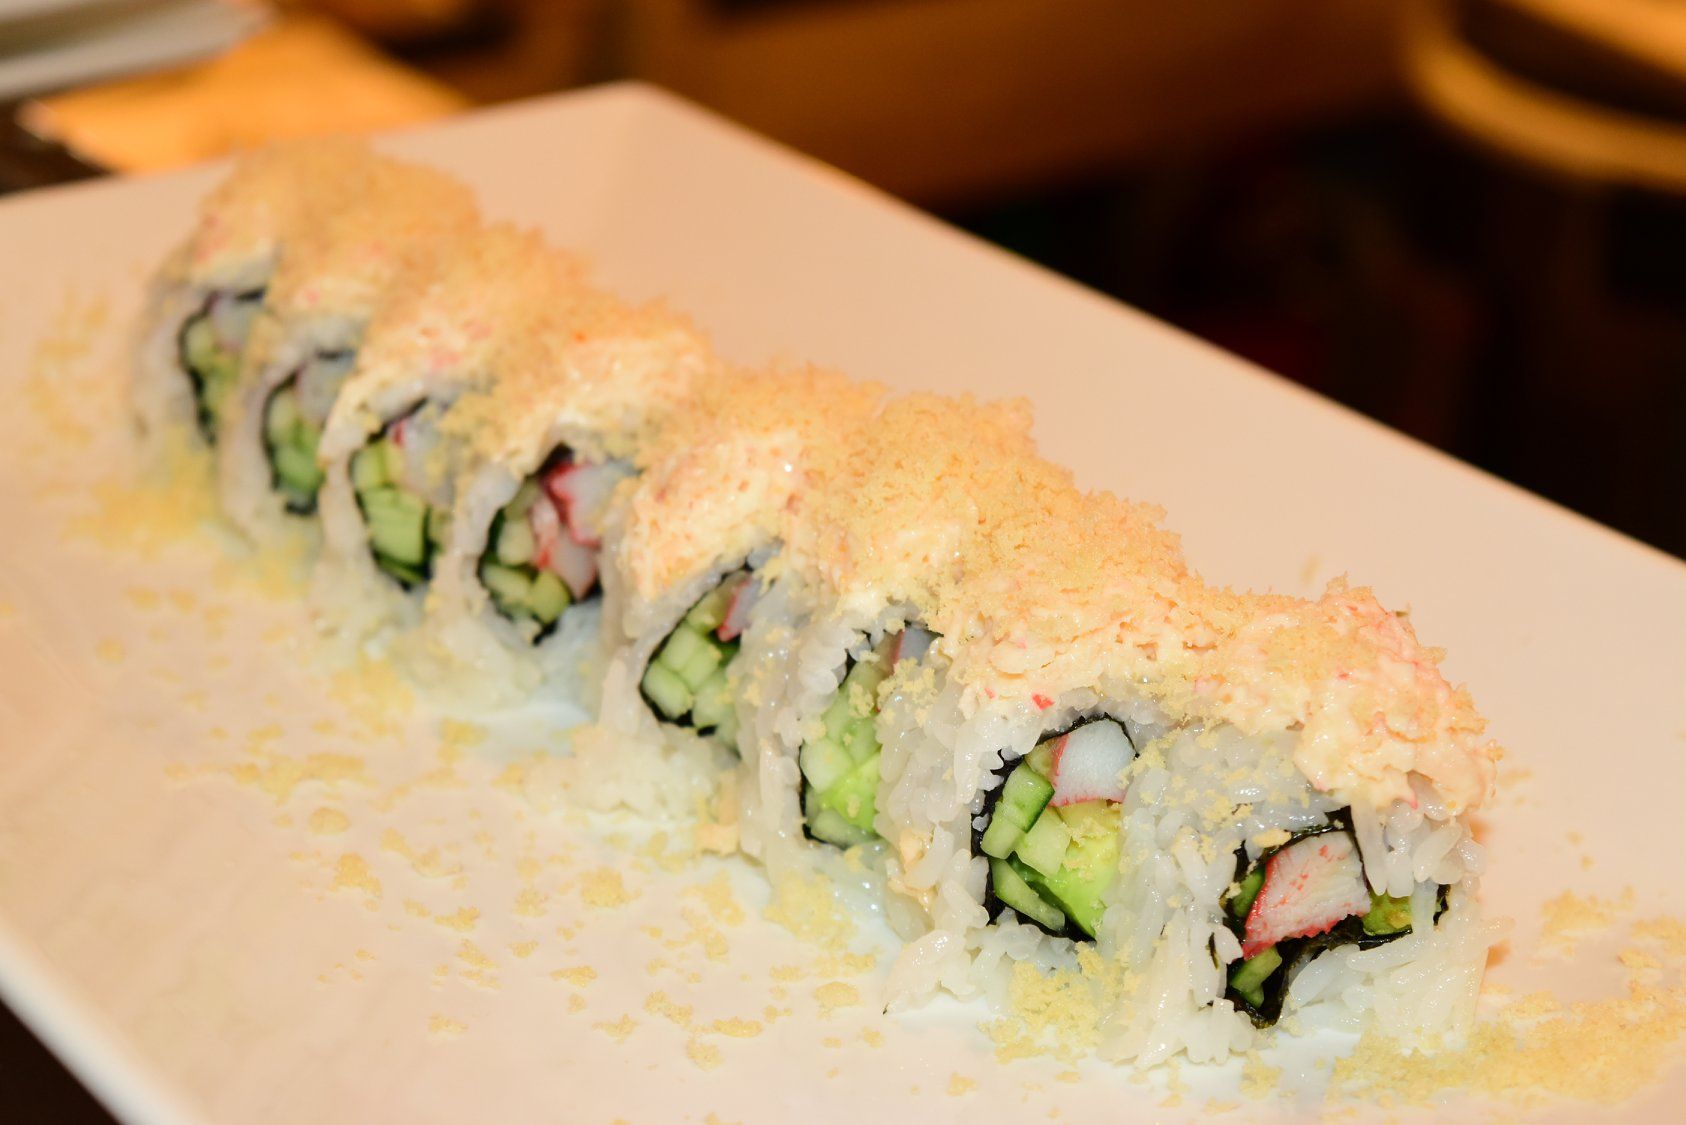 Asian Cuisine — Sushi rolls in Chico, CA